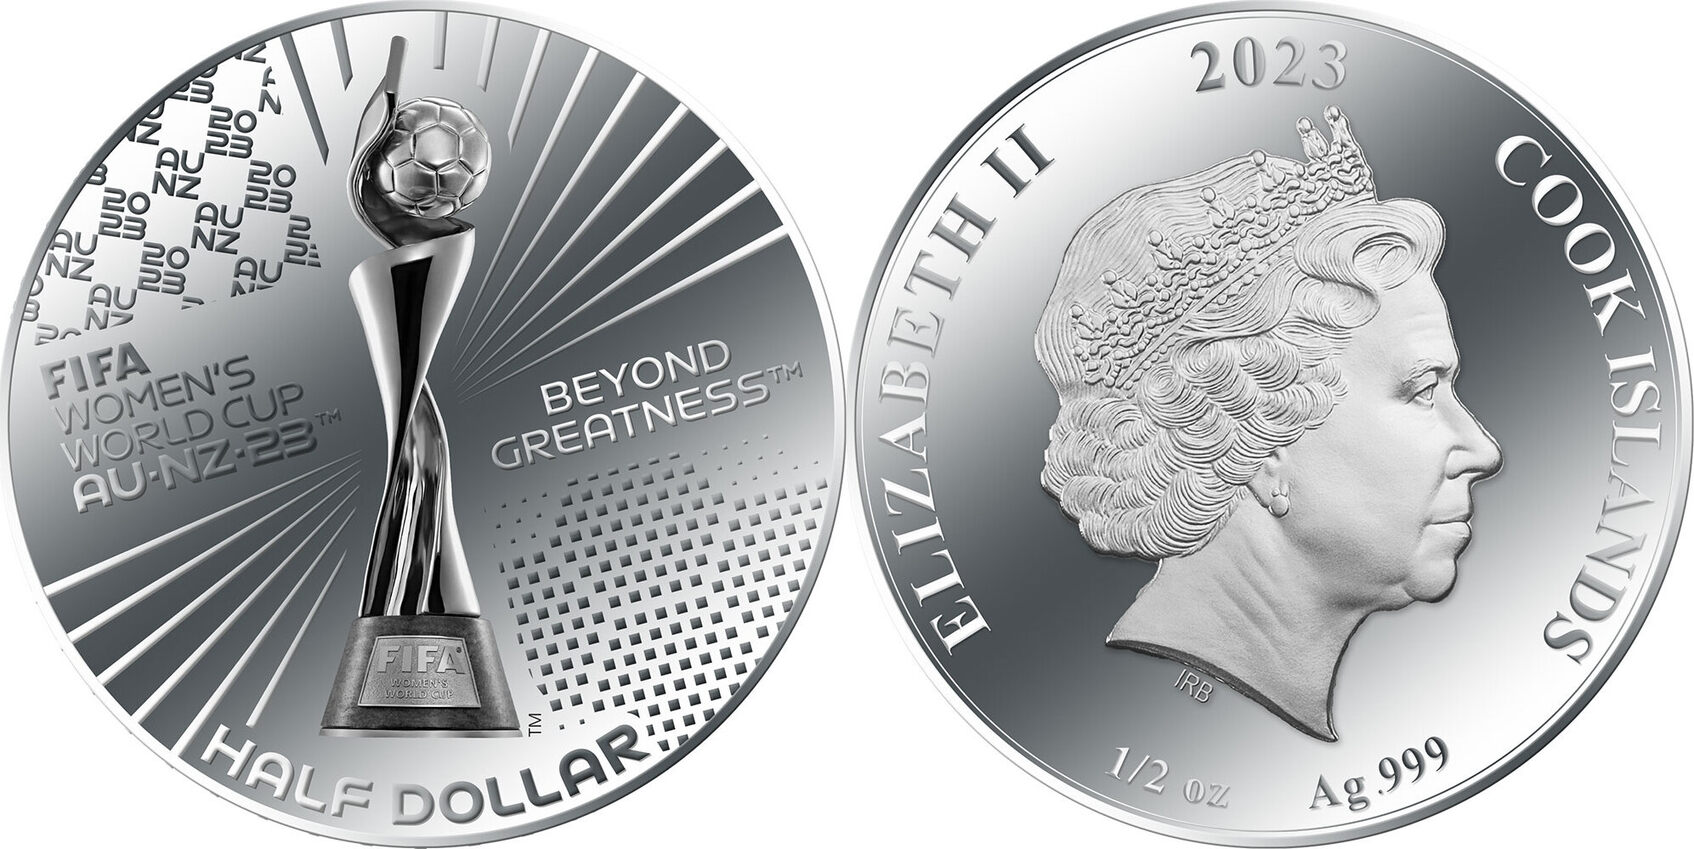 Half Dollar FIFA WOMEN WORLD CUP Silver Coin 1/2 Dollar Cook Islands